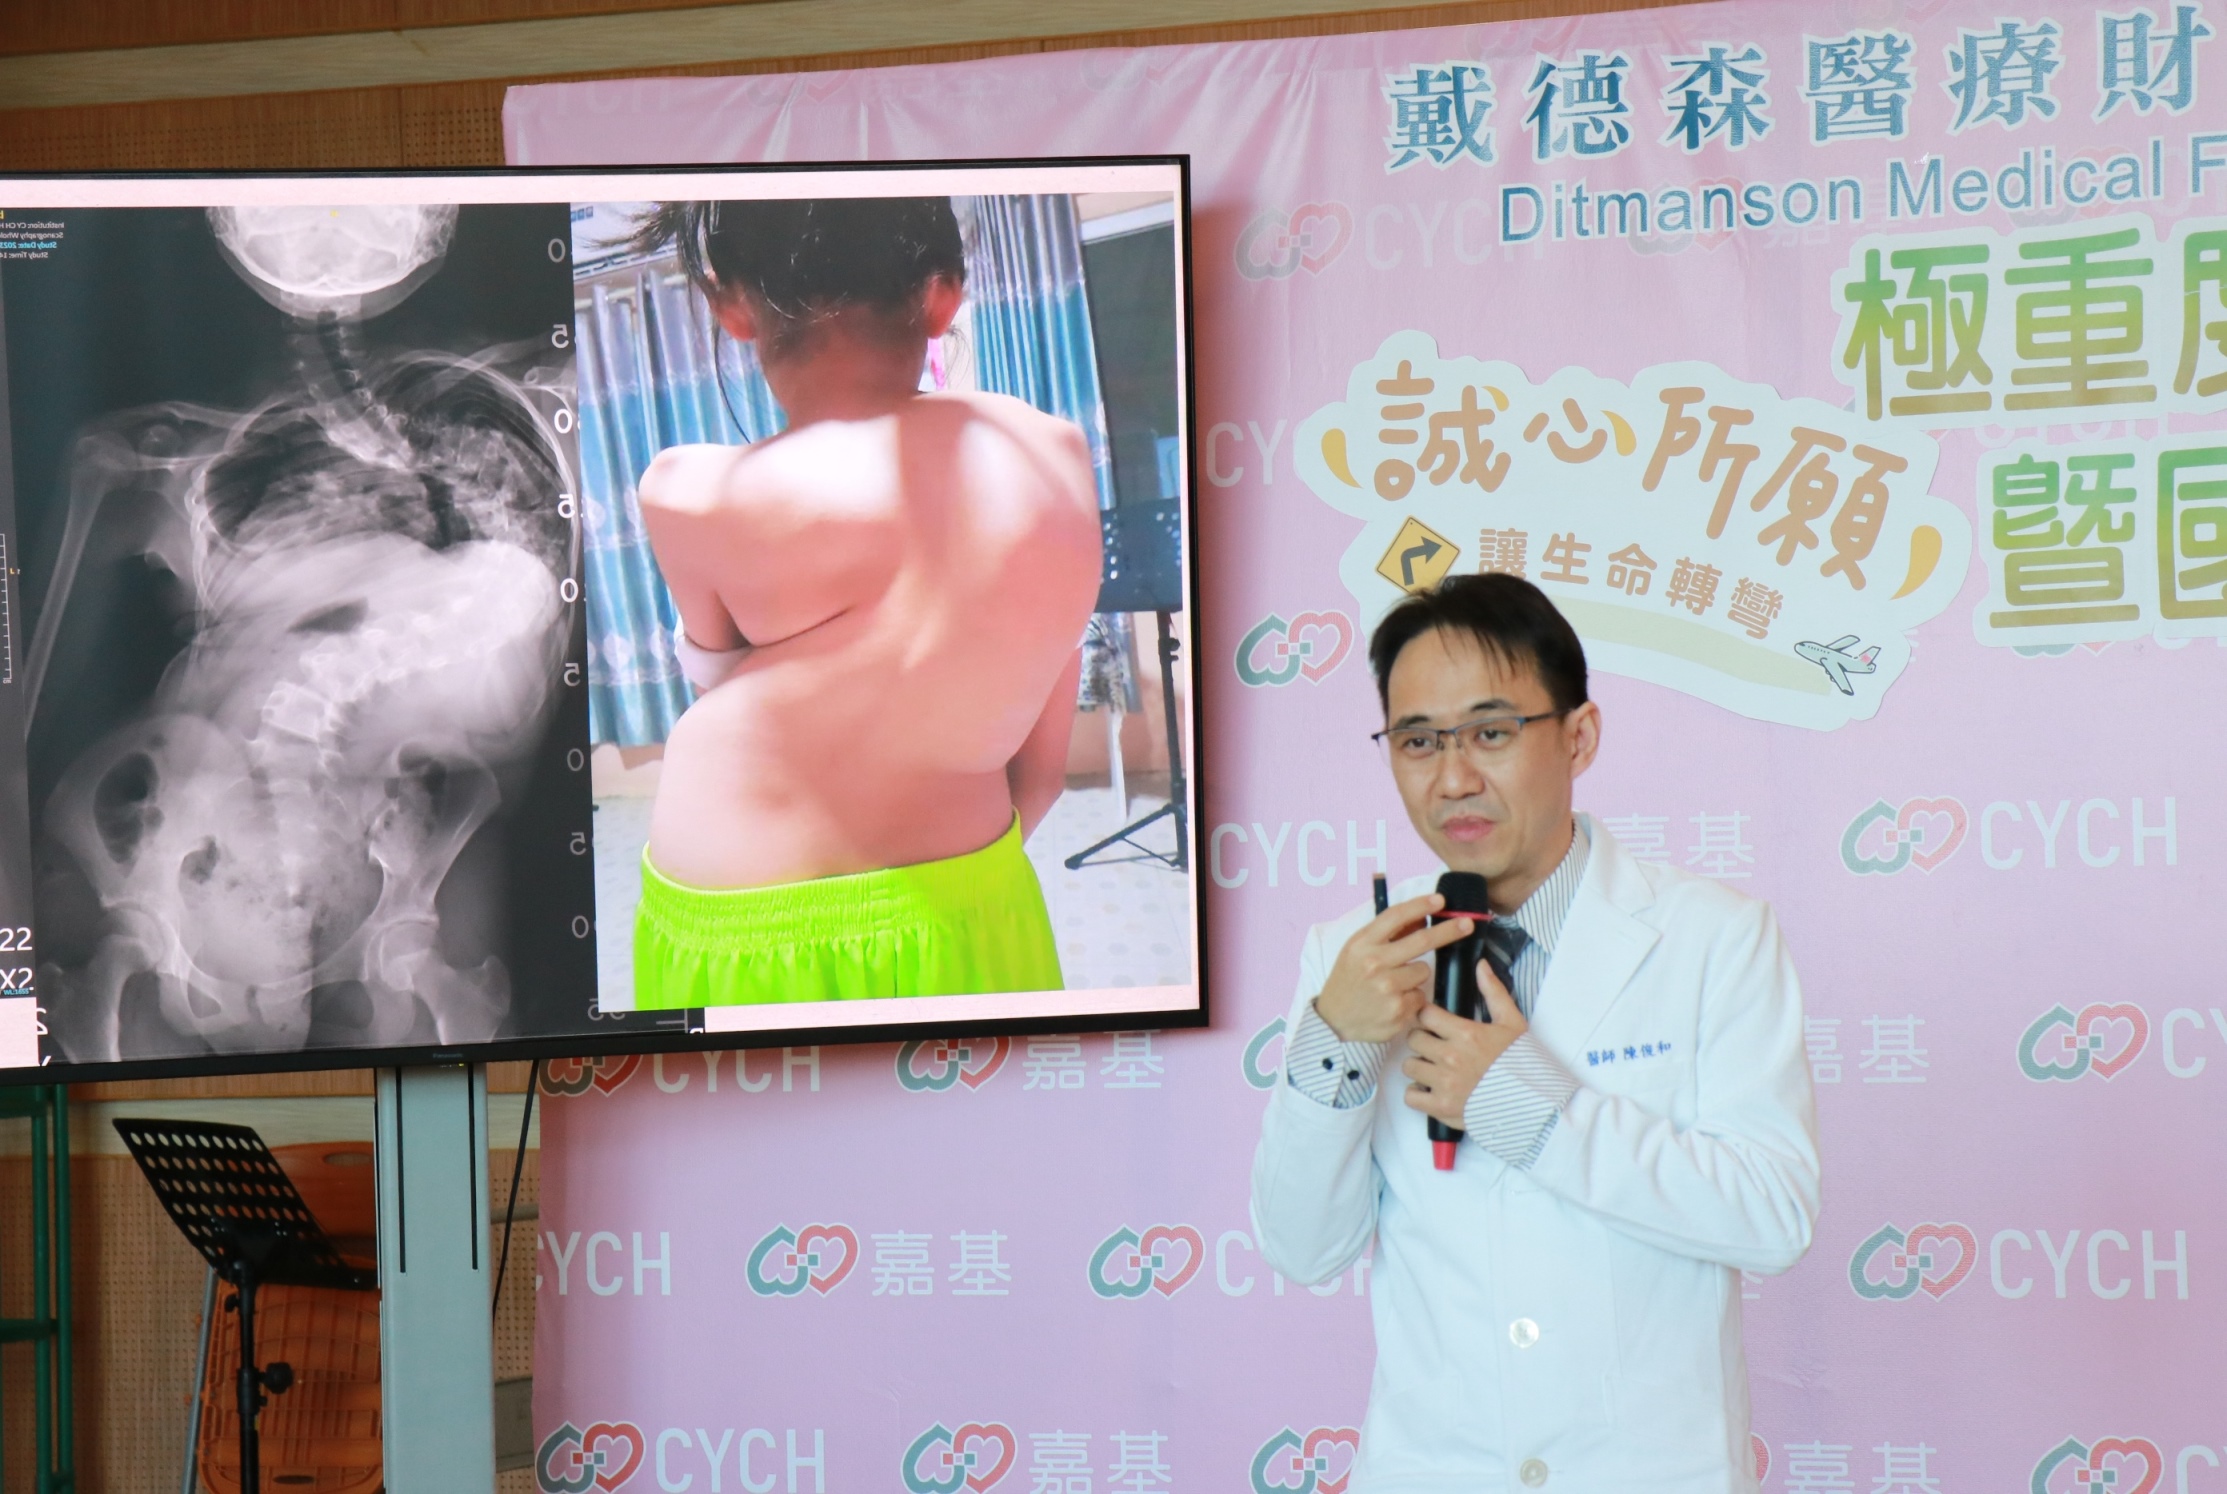 嘉基小兒骨科陳俊和醫師說明誠心脊椎側彎高達極重度的160度。(圖/嘉義基督教醫院提供)